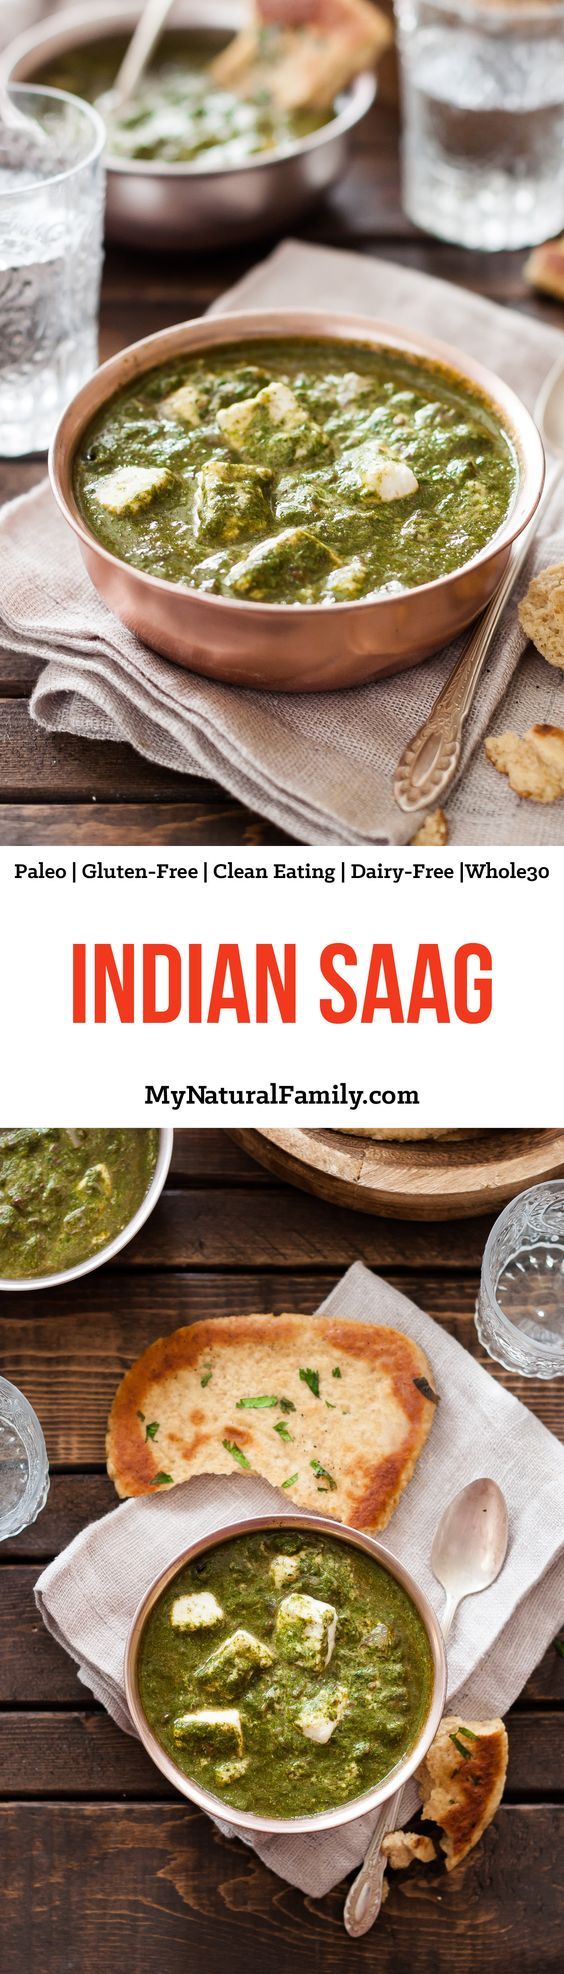 Indian Saag Paneer Recipe (Clean Eating, Gluten Free, Vegetarian